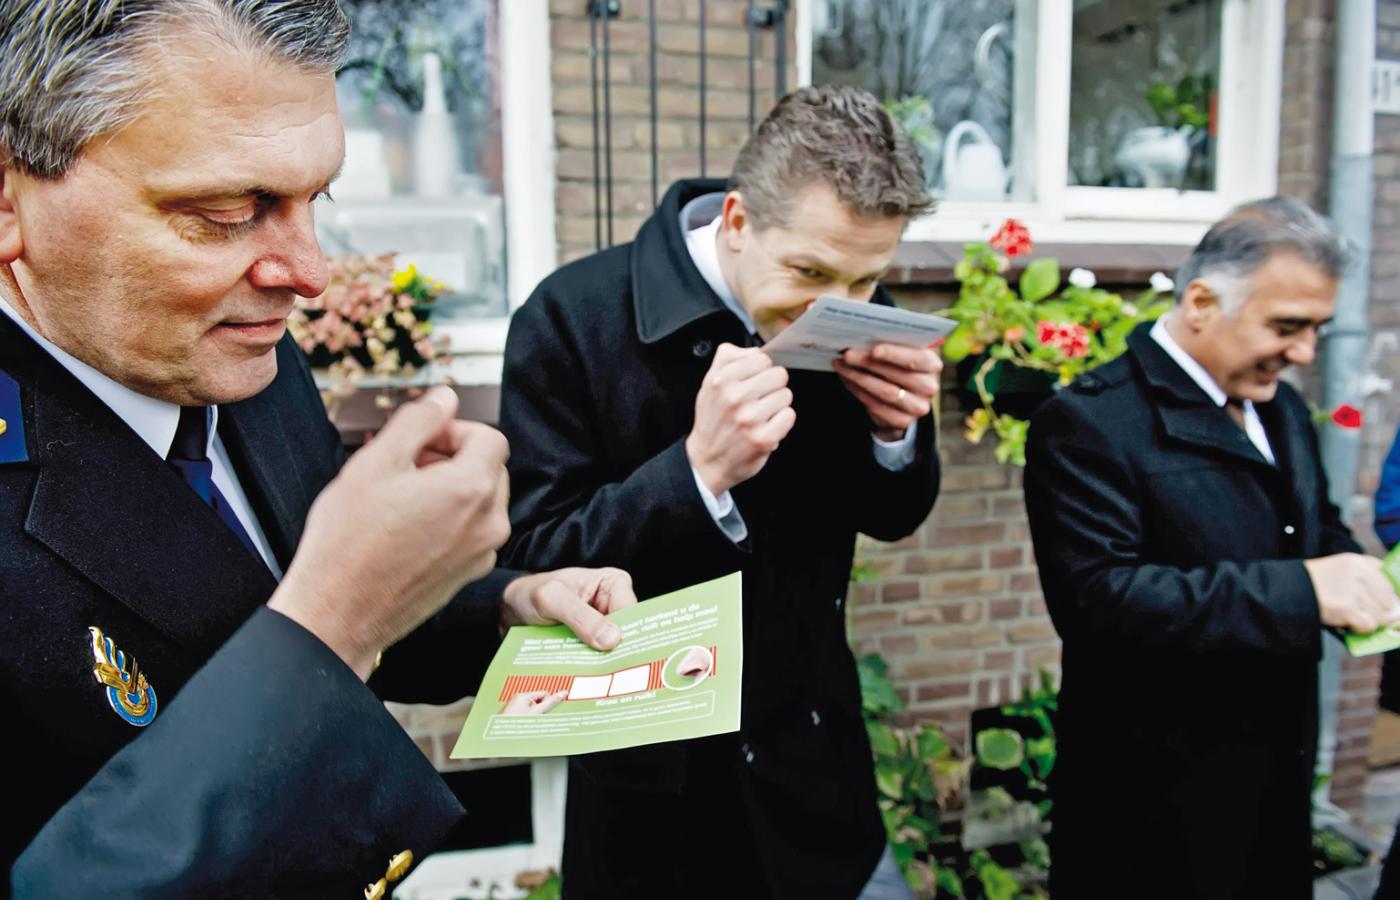 Holenderscy policjanci zapoznają się z kartami zapachowymi, które mają pomóc w zwalczaniu nielegalnych upraw marihuany.